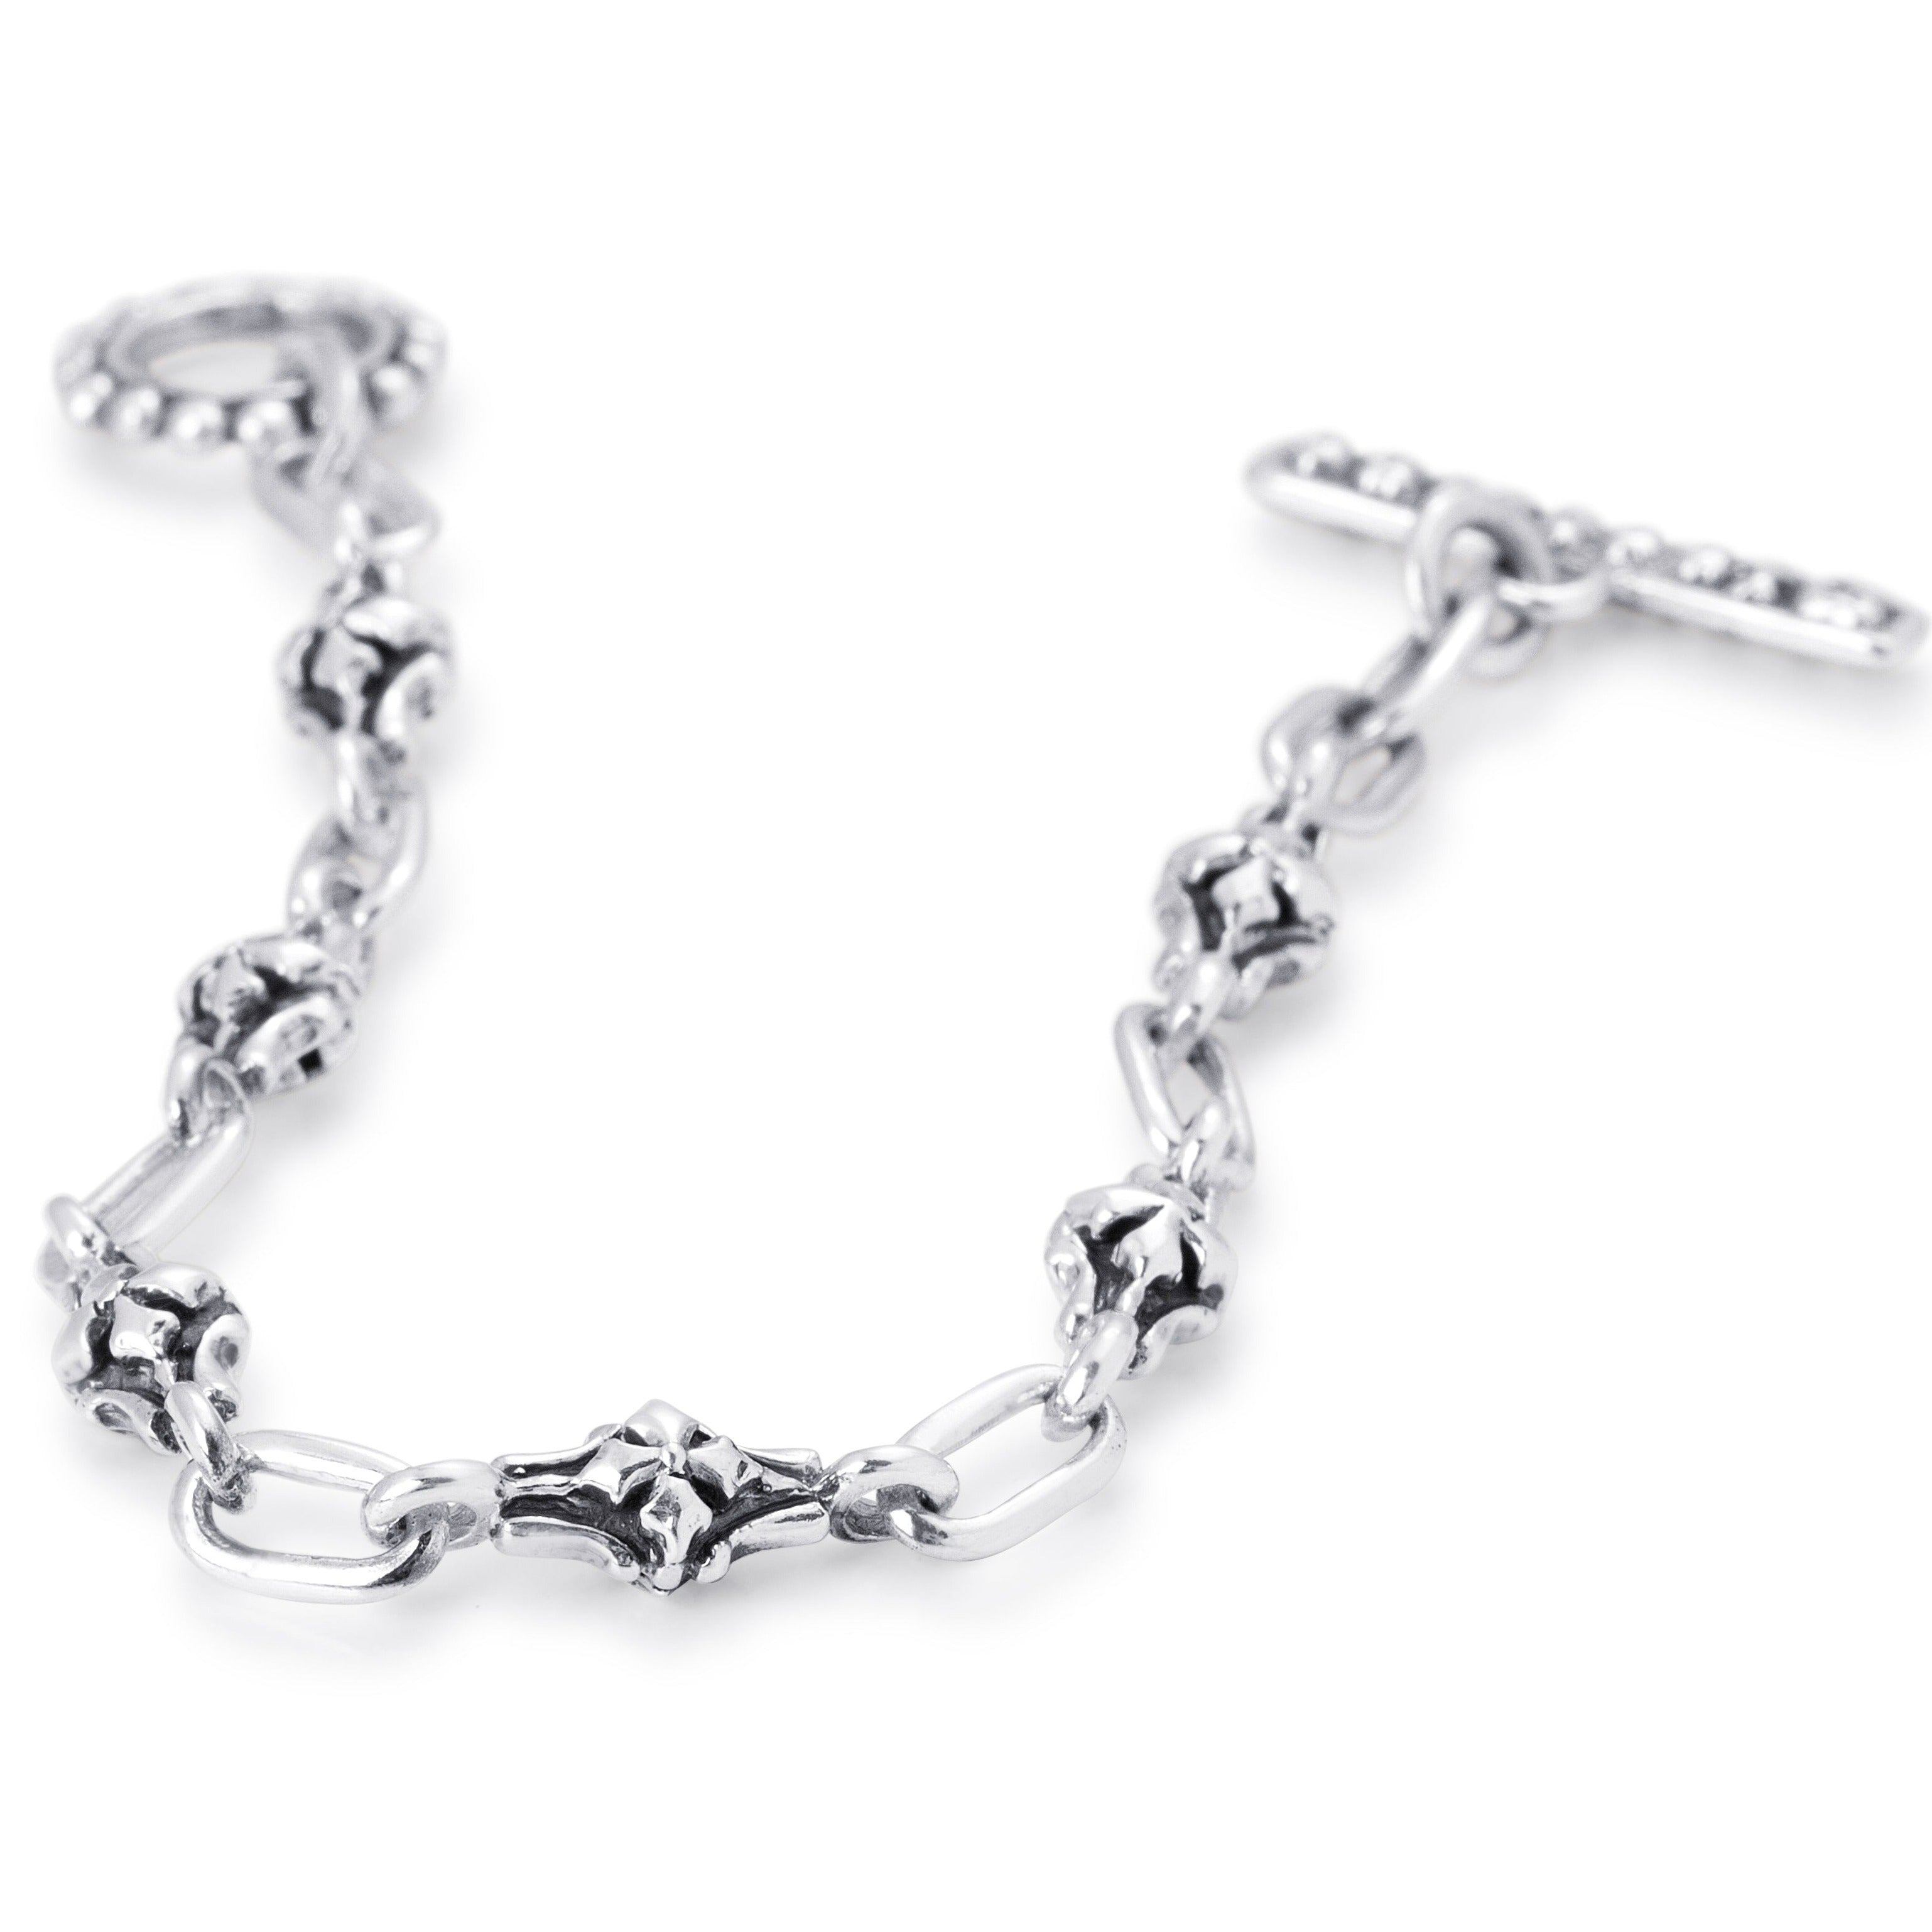 Barcelona Chain Link Bracelet in Sterling Silver, 6mm